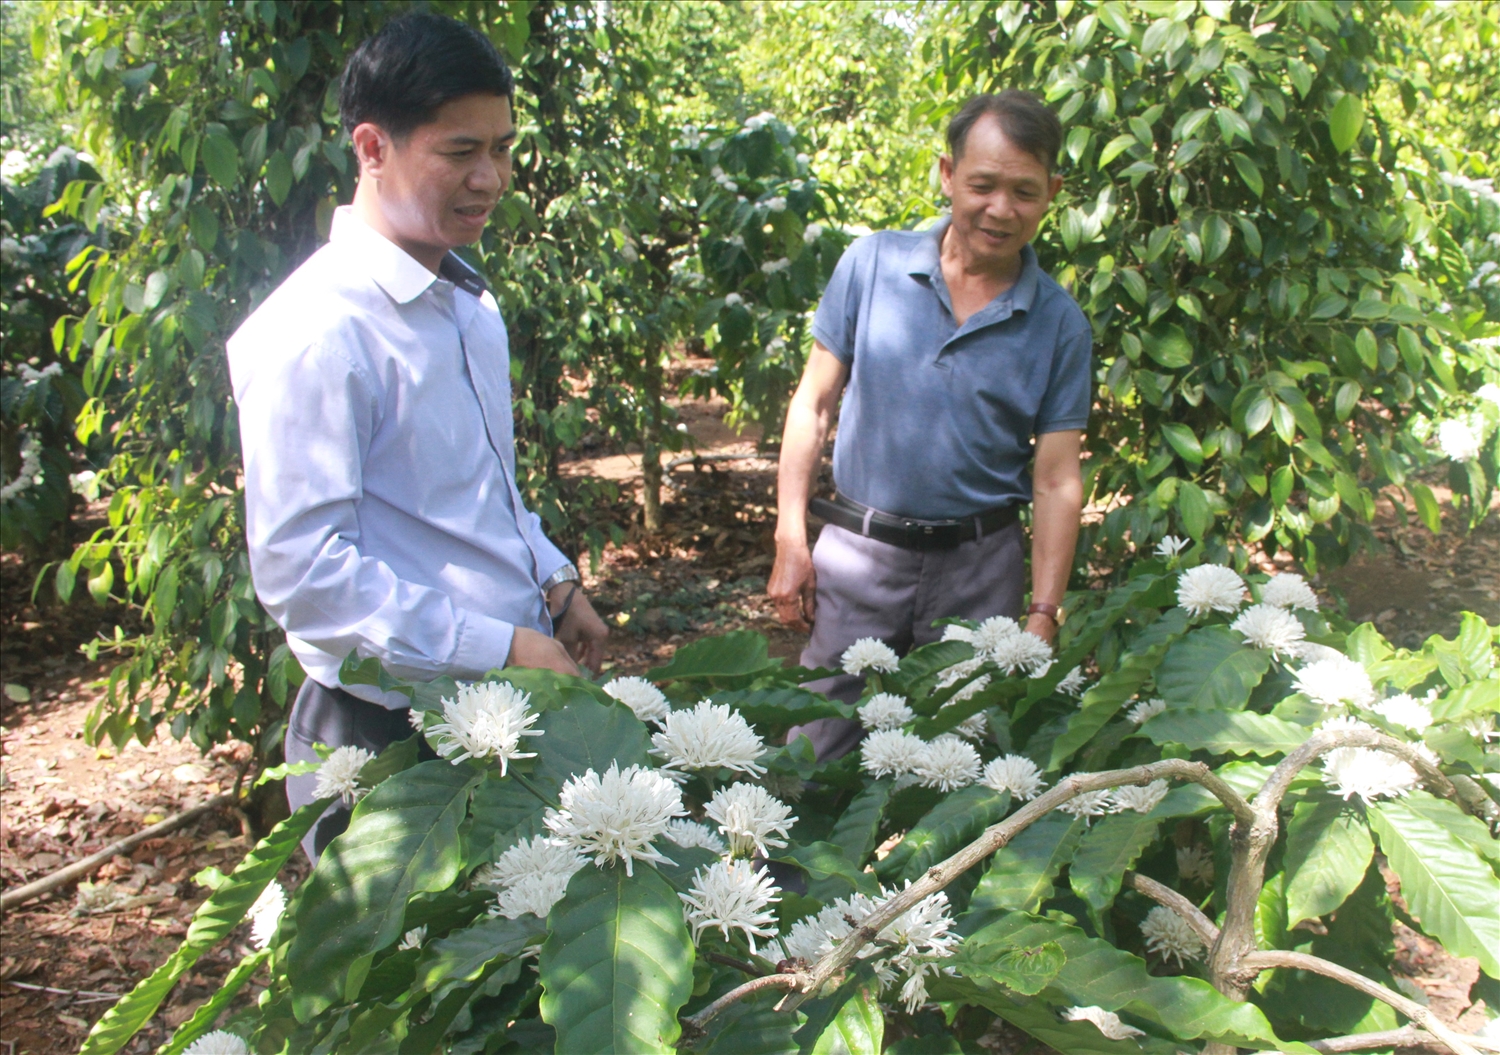 Anh Lê Văn Vương hướng dẫn người dân thu hoạch những bông hoa cà phê không nuôi quả để làm trà